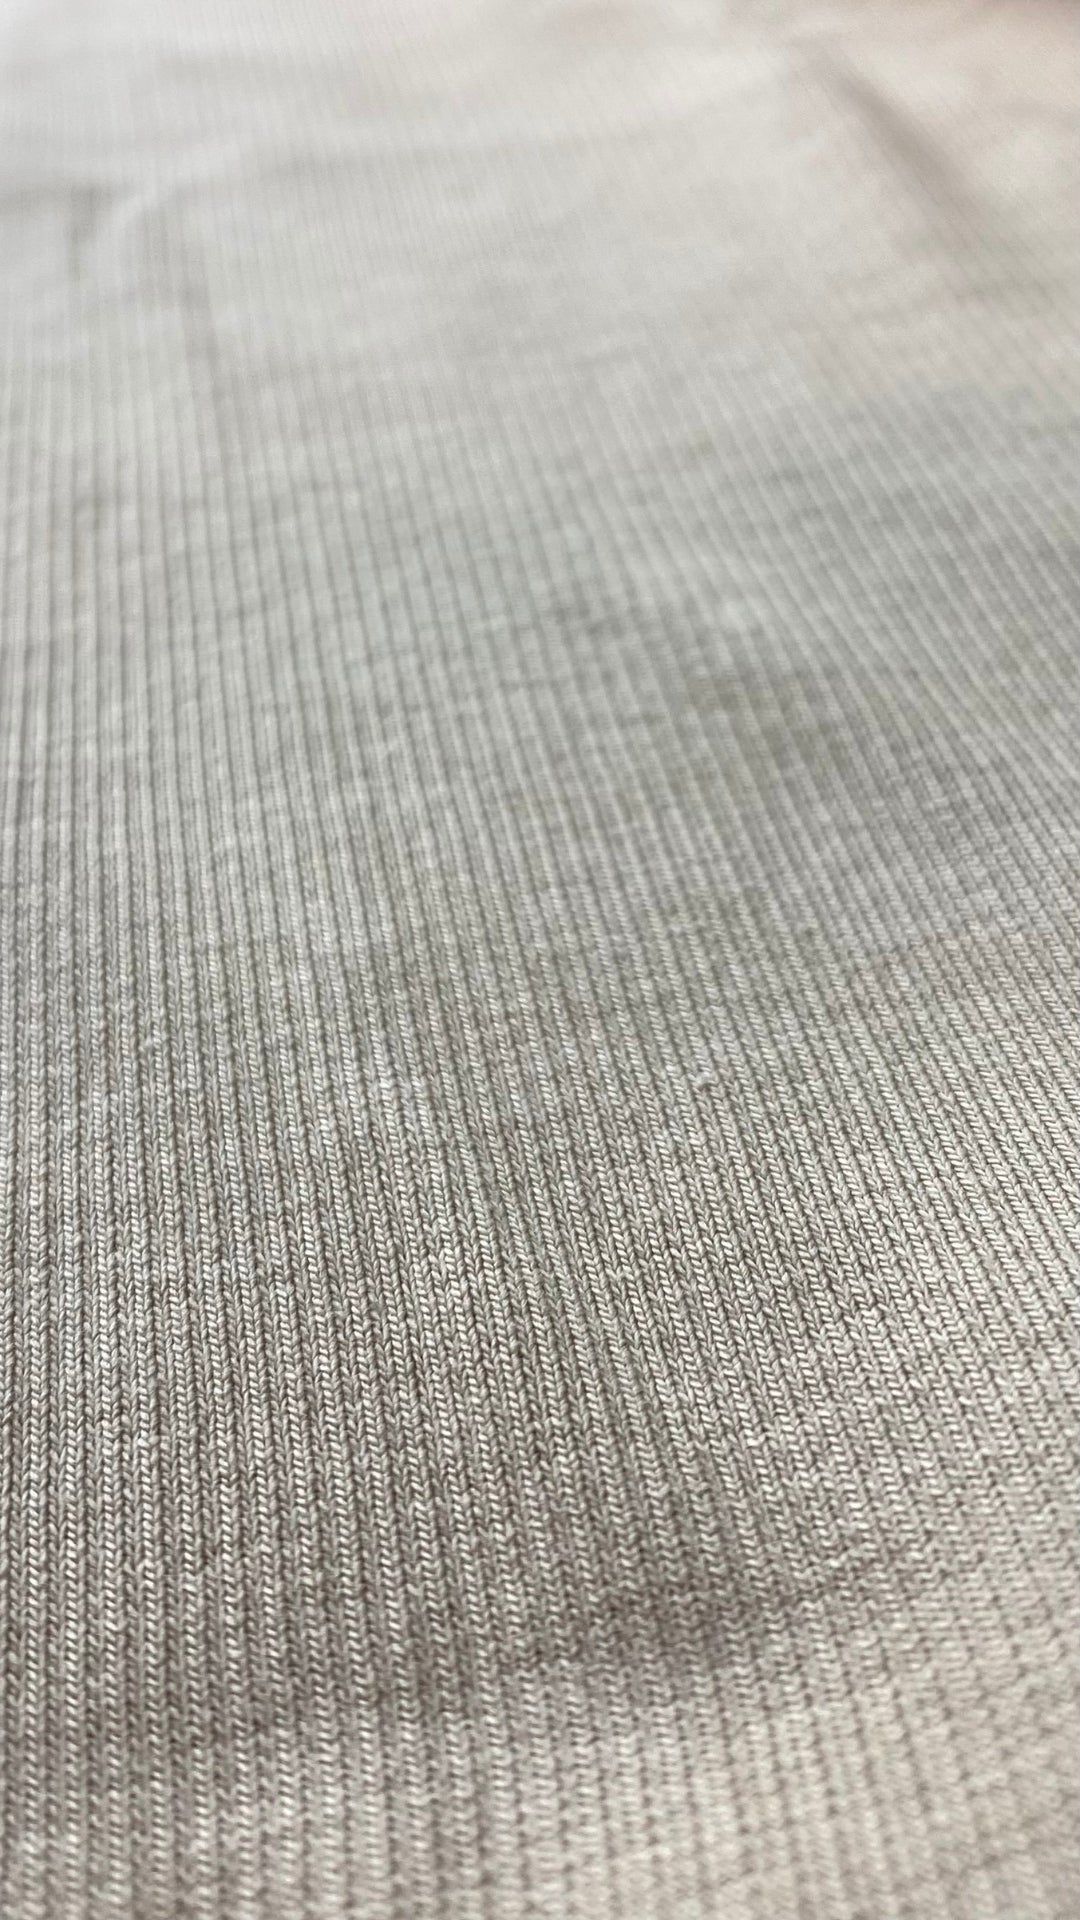 Camisole côtelée de base beige, Seve&Co, neuve. Vue de près du tissu.